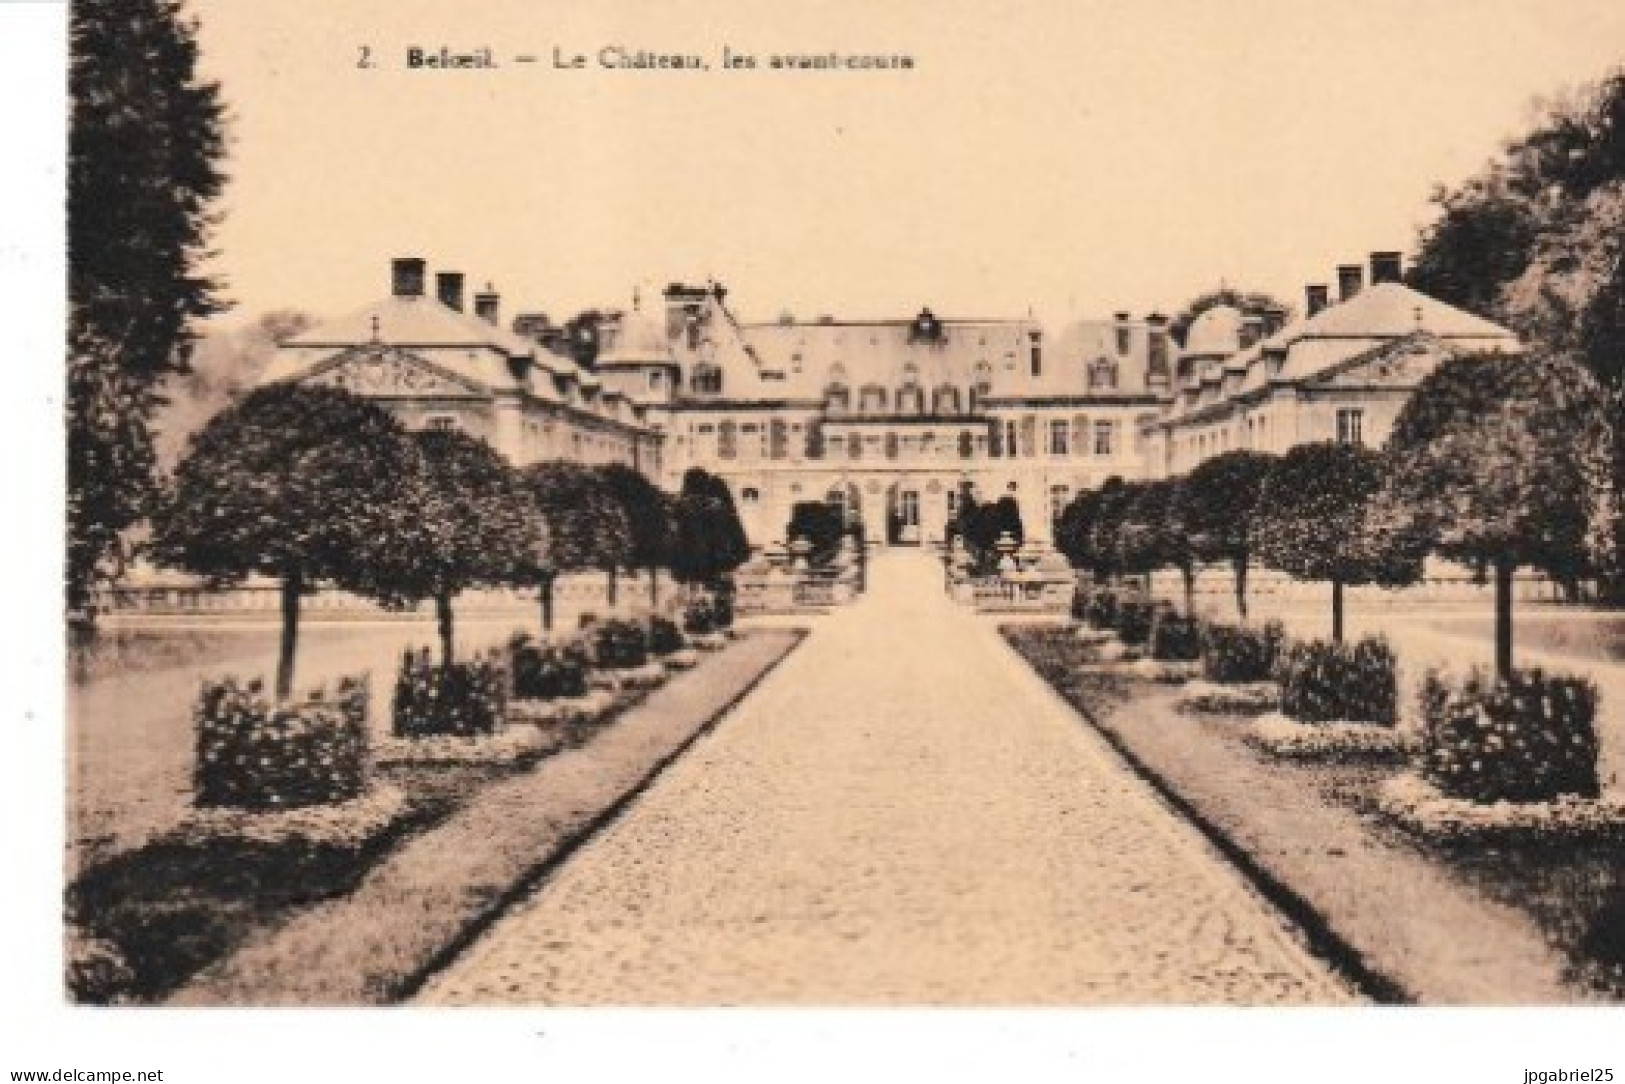 Beloeil Le Chateau Les Avant Cours - Beloeil